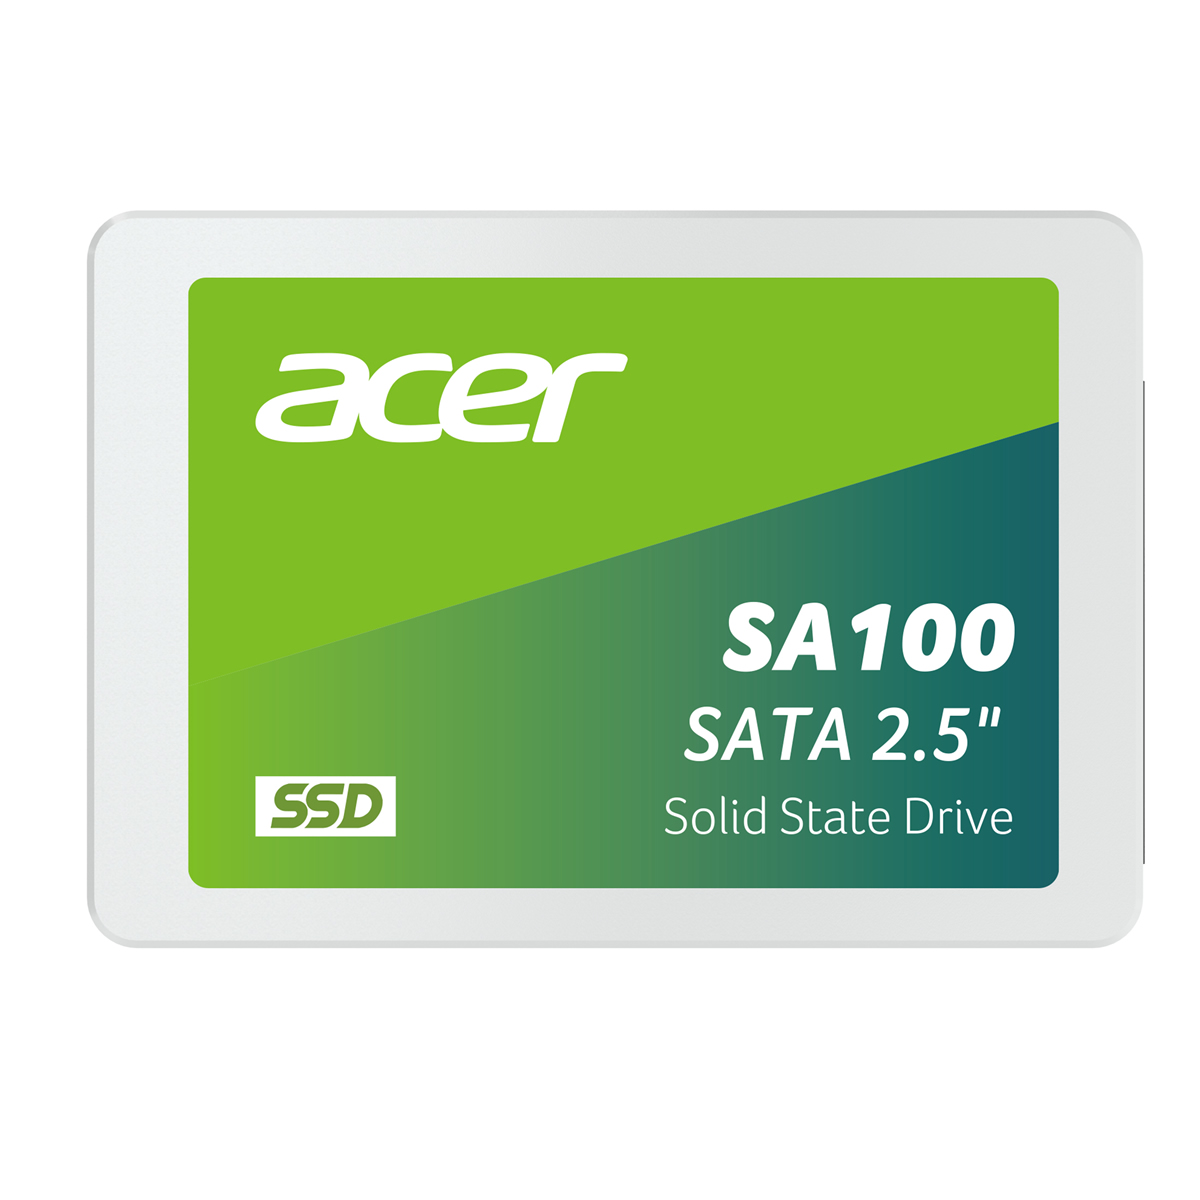 UNIDAD SSD ACER SA100 240GB SATA 2.5" 560MB/S (BL.9BWWA.102) (ED) - BL.9BWWA.102 (ED)